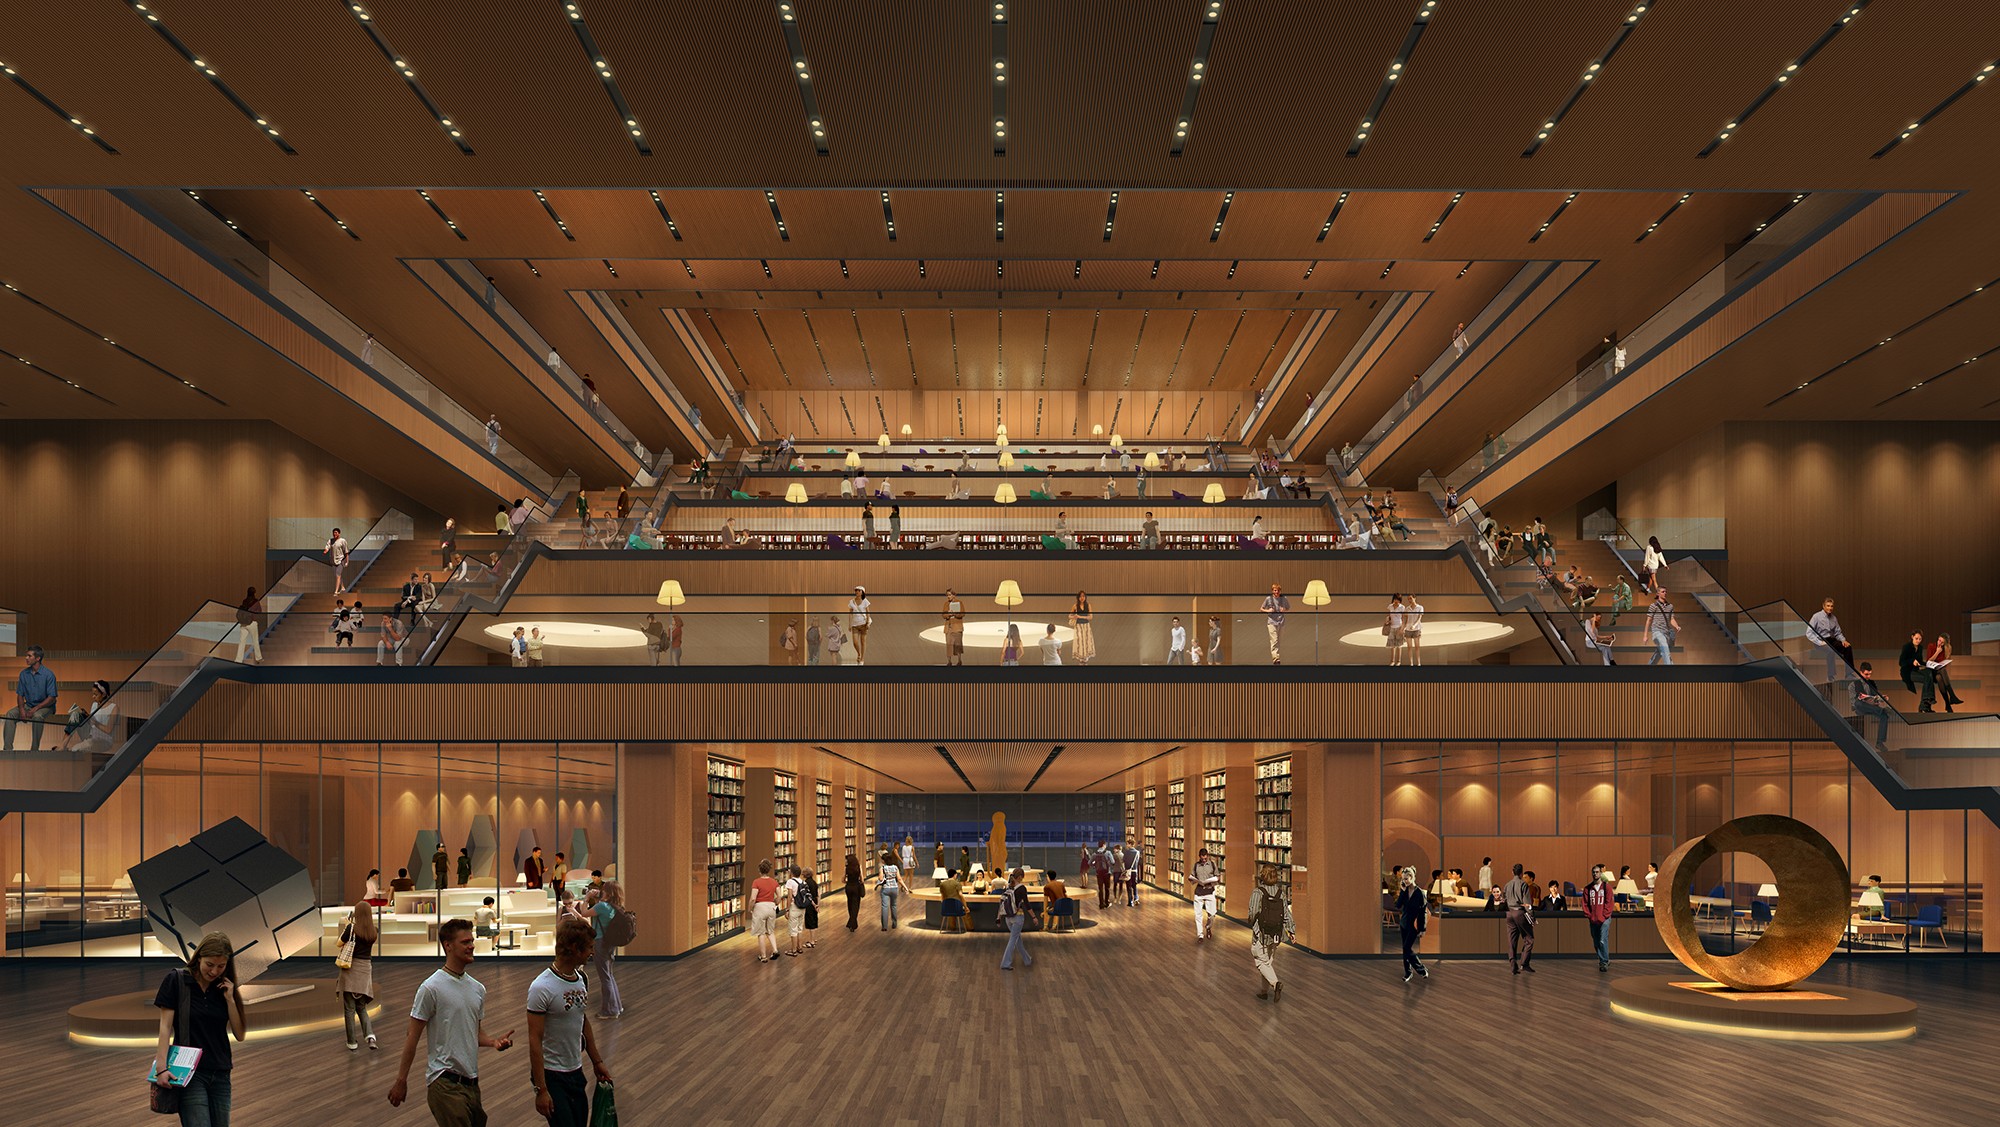 桃園市立圖書館總館新建工程競圖 第五名: Q-Lab 曾永信建築師事務所